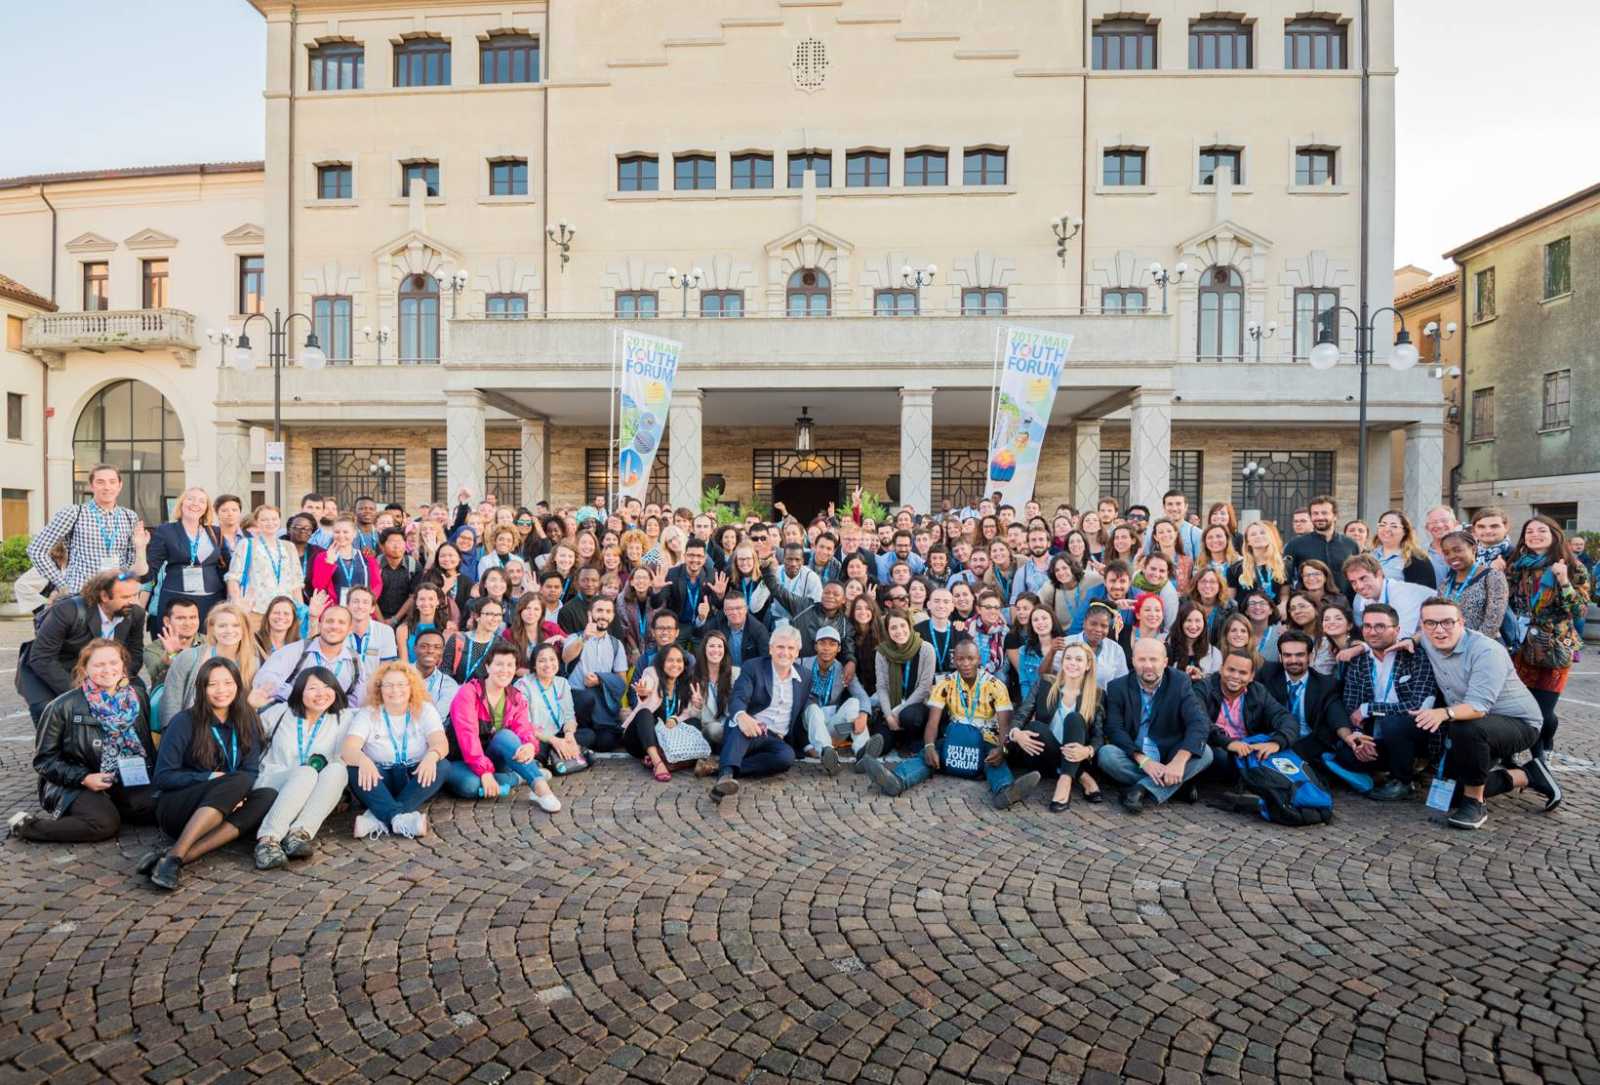 Η Αναπτυξιακή Πάρνωνα συμμετέχει στο 1ο Παγκόσμιο Φόρουμ Νεολαίας της UNESCO (2017 MAB Youth Forum), για το πρόγραμμα ΜΑΒ (Man And Biosphere)